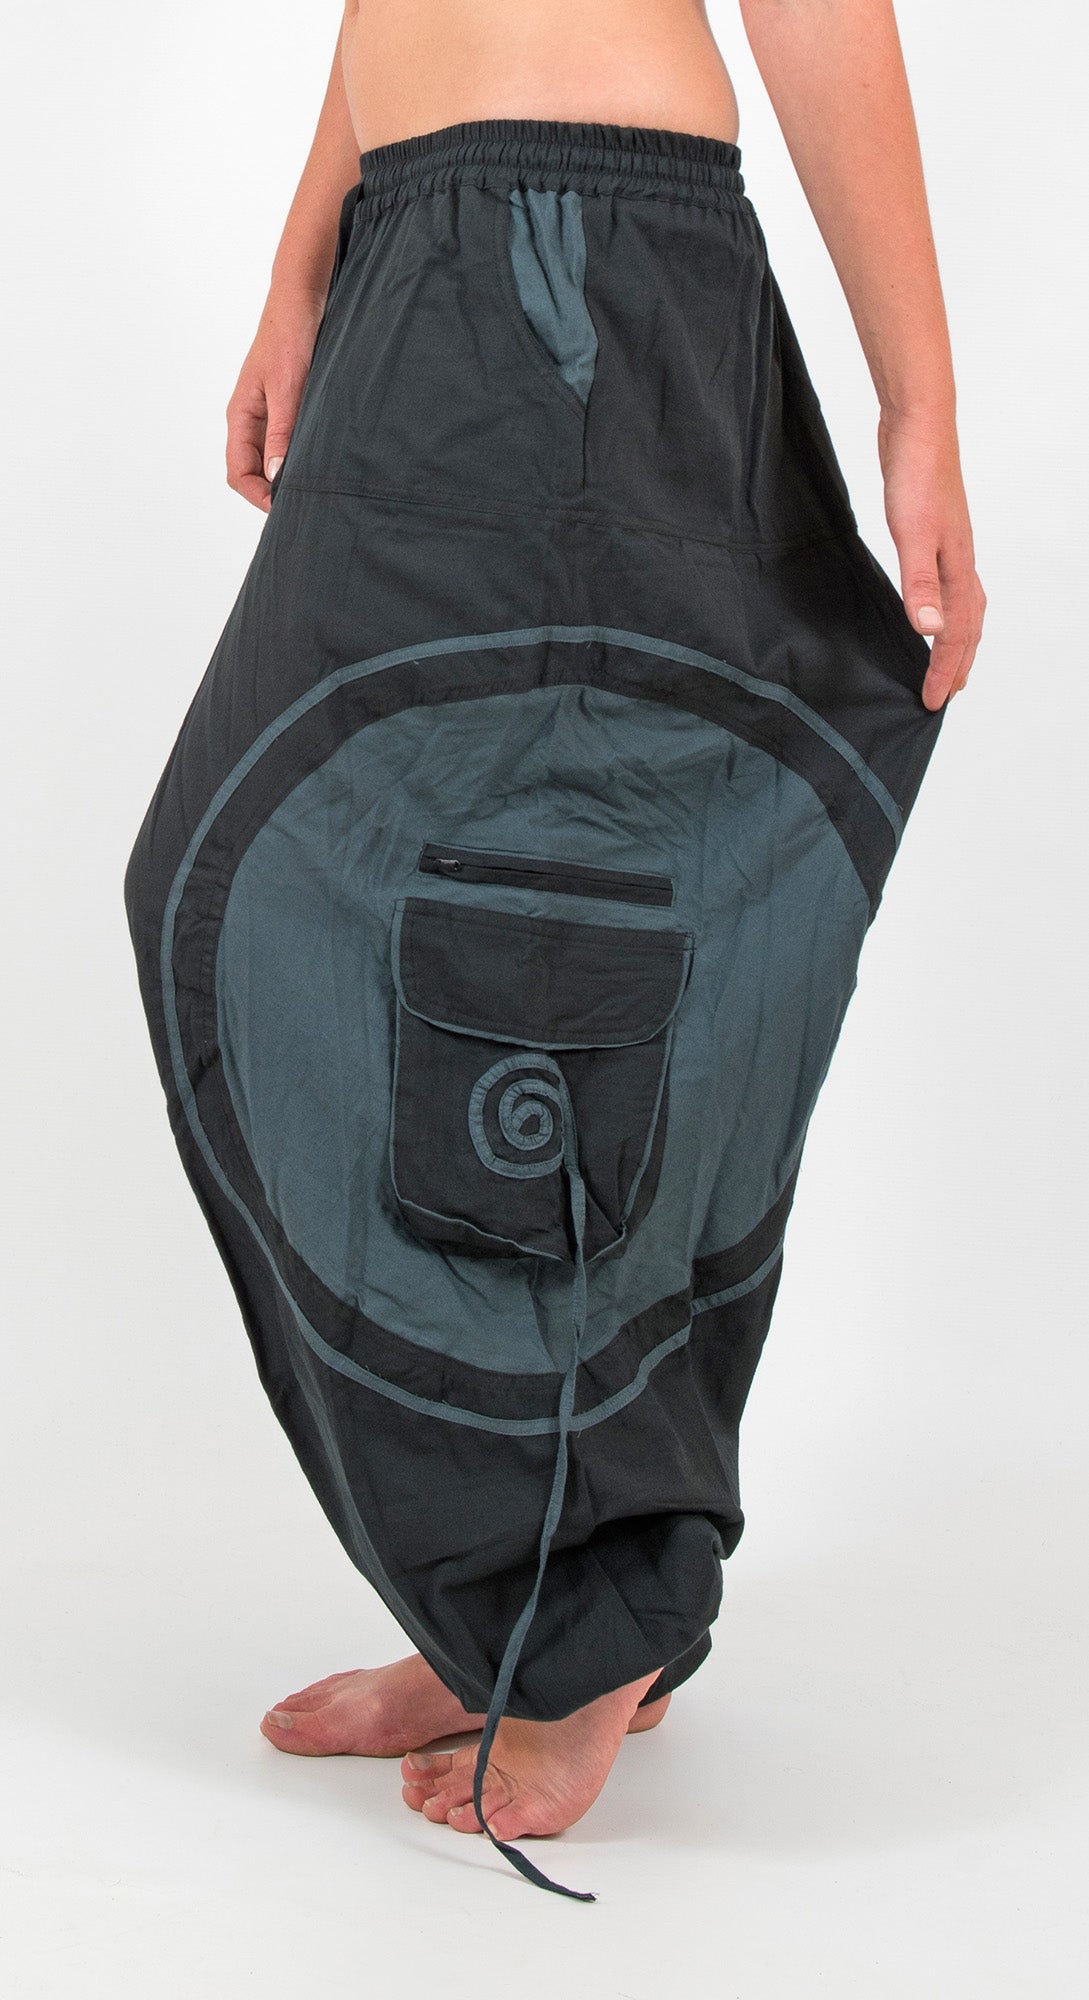 Unisex Cotton Pant With Spiral Prints, Harem Pants, Yoga Pants, Hippie  Clothes, Aladdin Pants, Boho Pants, Organic Cotton Pants 